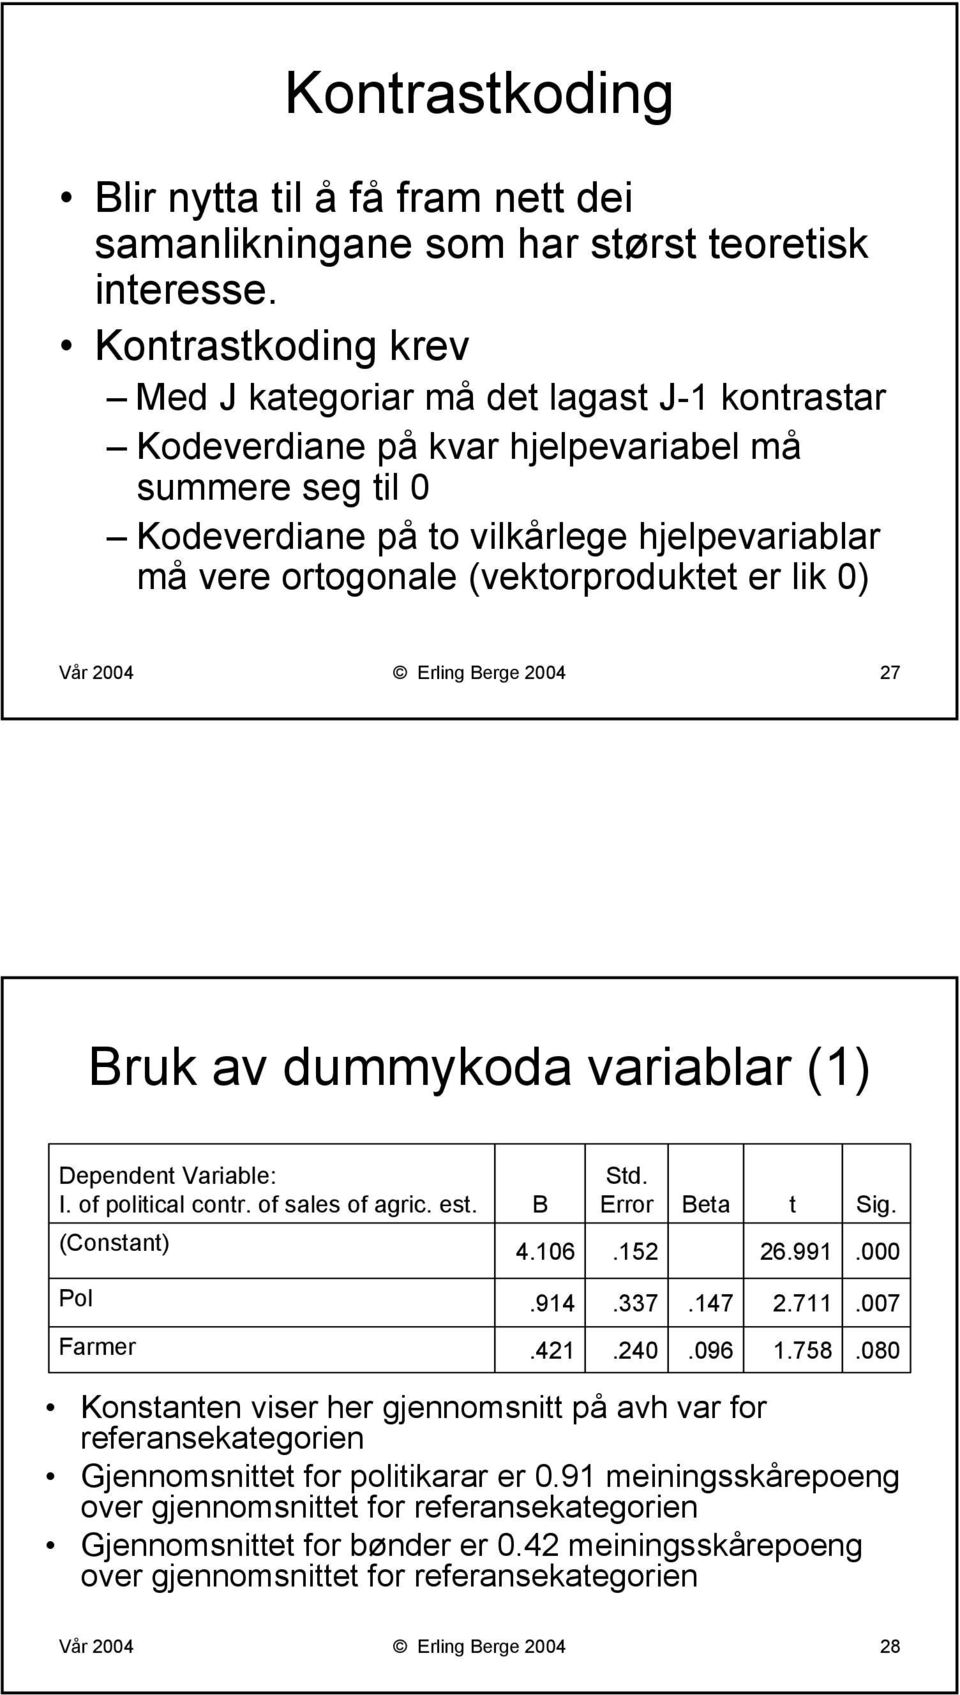 (vektorproduktet er lik 0) Vår 2004 Erling Berge 2004 27 Bruk av dummykoda variablar (1) Dependent Variable: I. of political contr. of sales of agric. est. (Constant) B 4.106 Std. Error.152 Beta t 26.